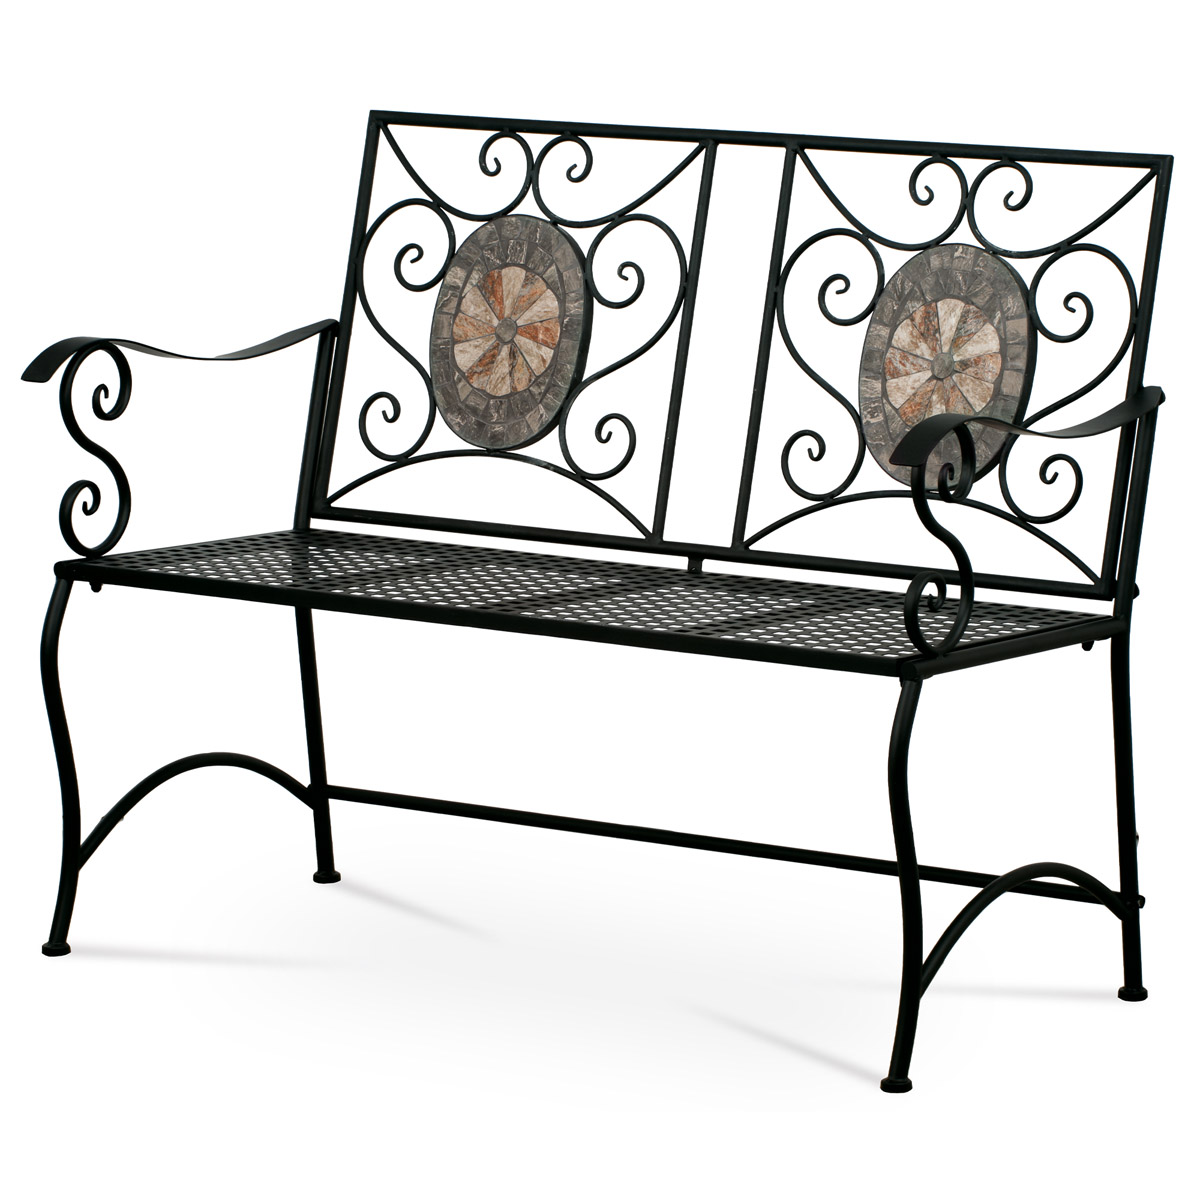 Zahradní lavice, keramická mozaika, kovová kontrukce, černý matný lak